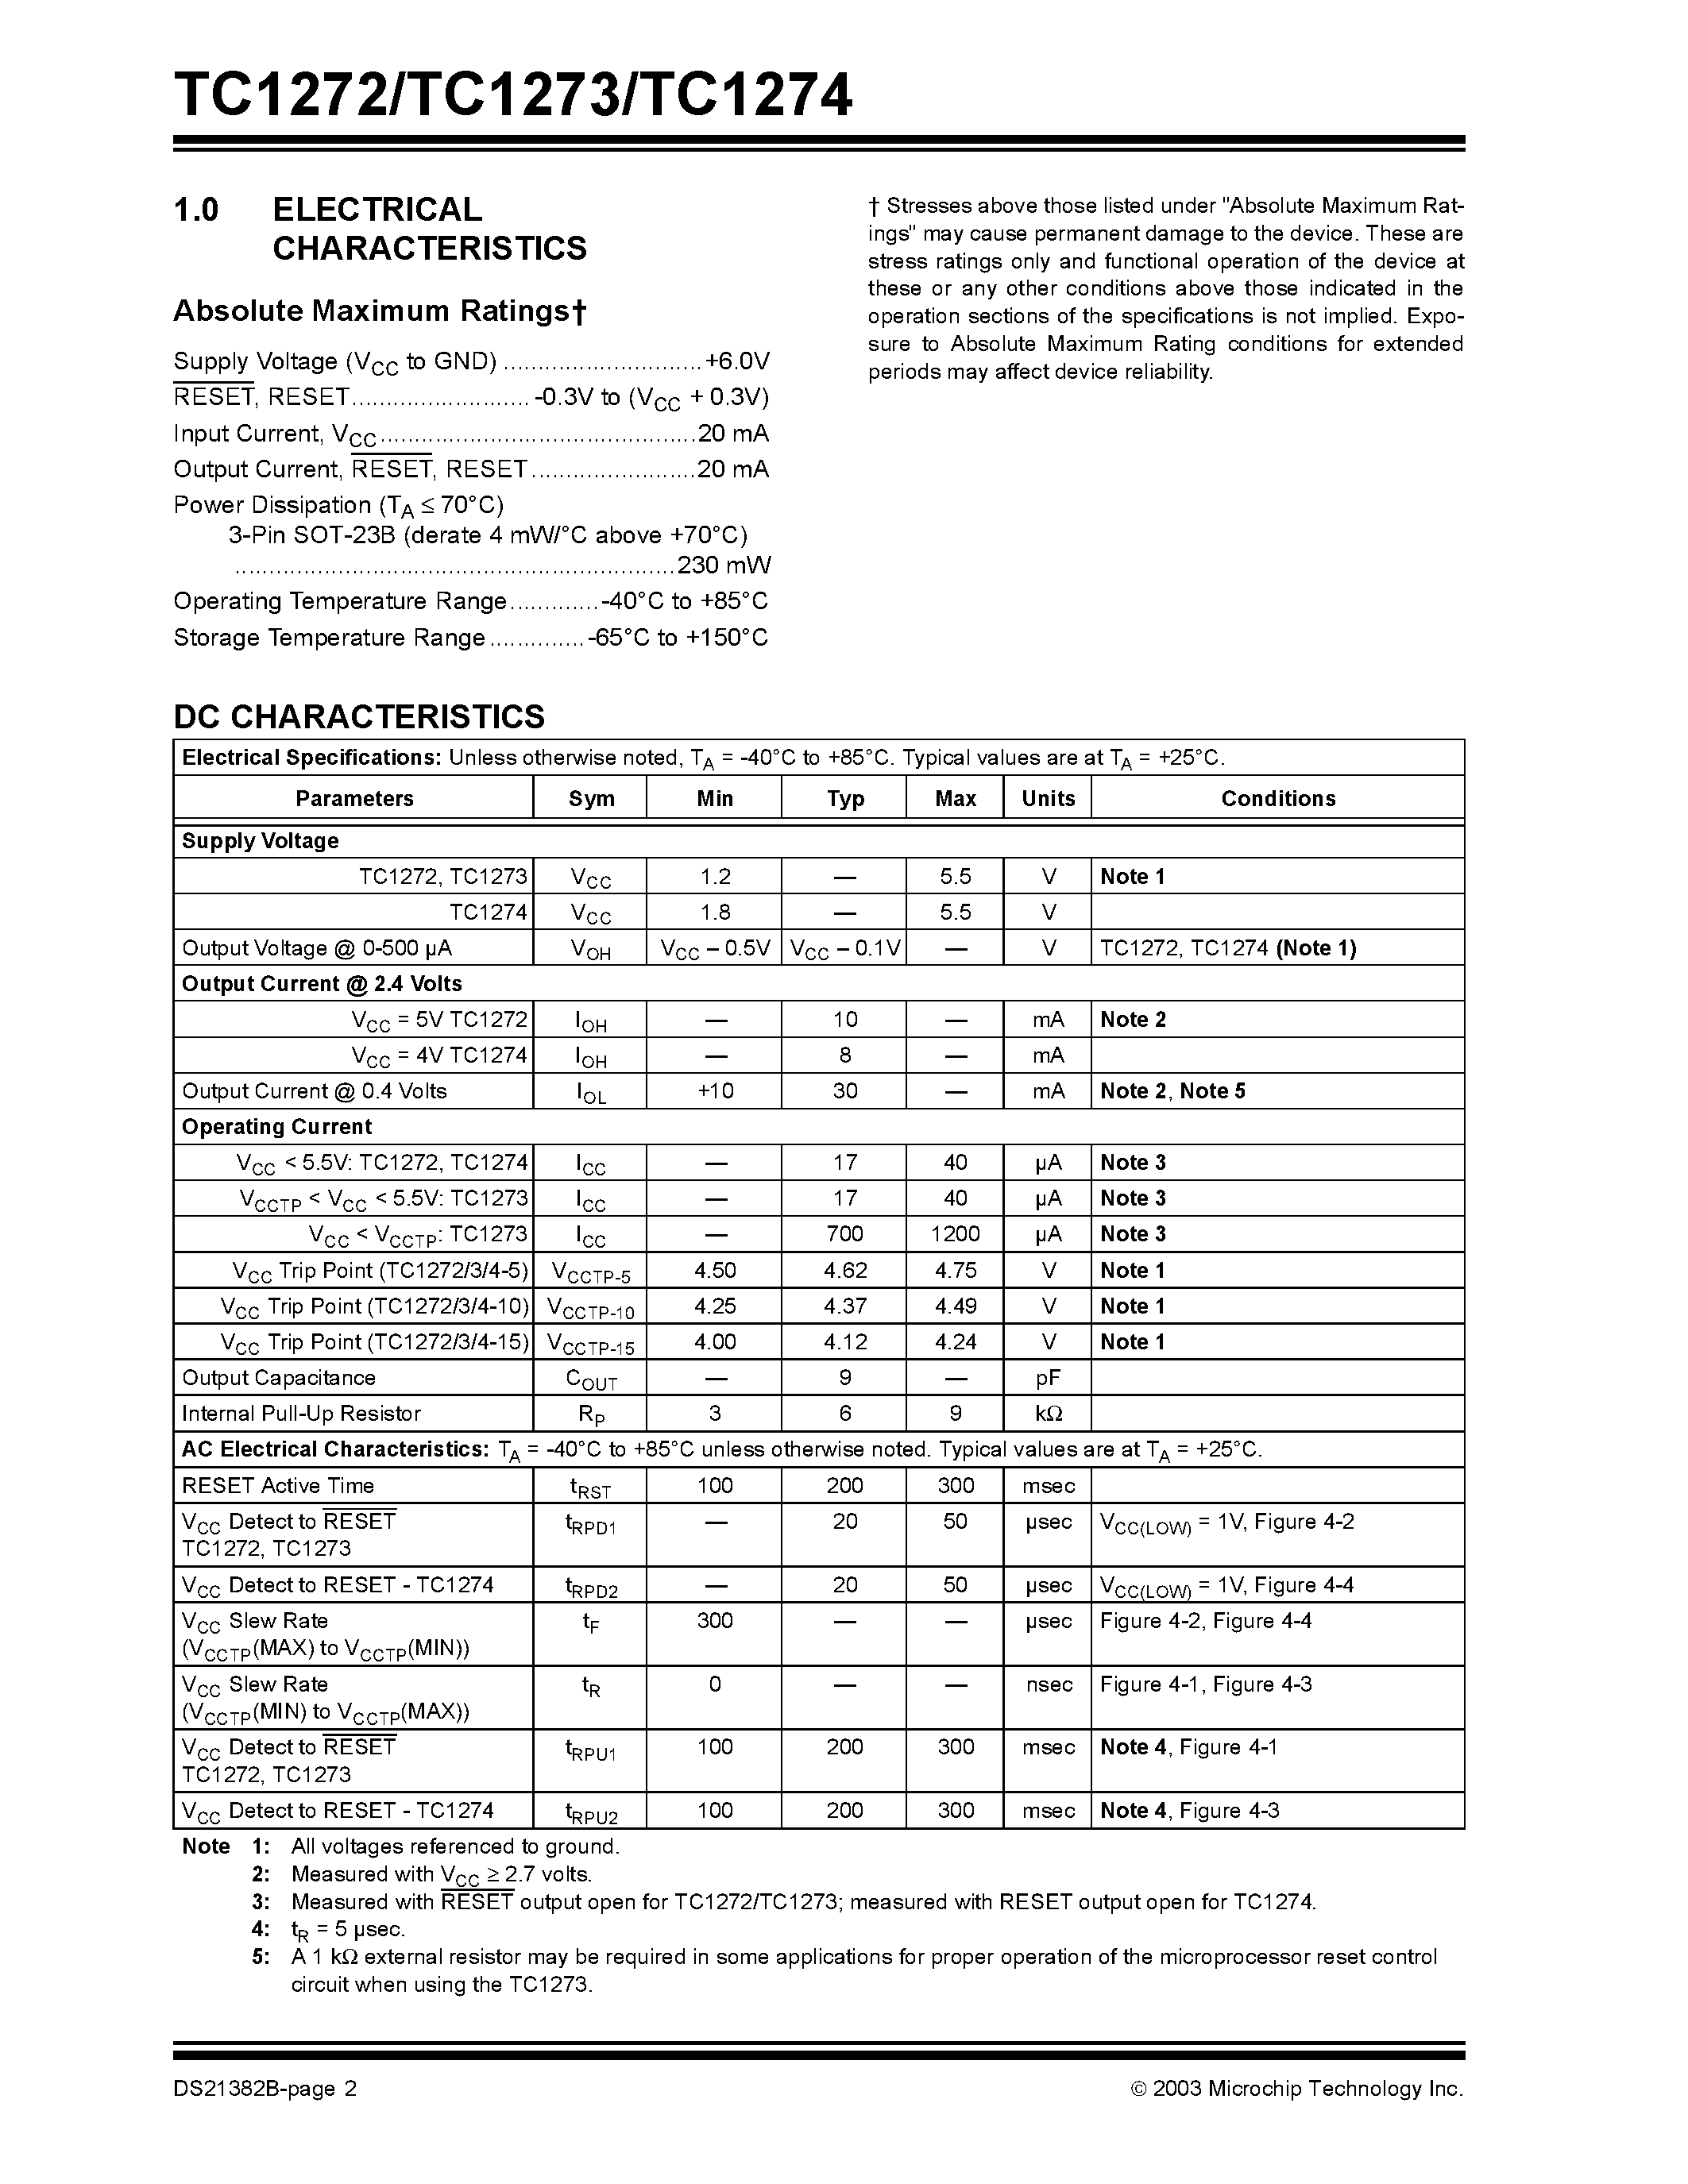 Datasheet TC1272 - (TC1272 / TC1273 / TC1274) 3-Pin Reset Monitors for 5V Systems page 2